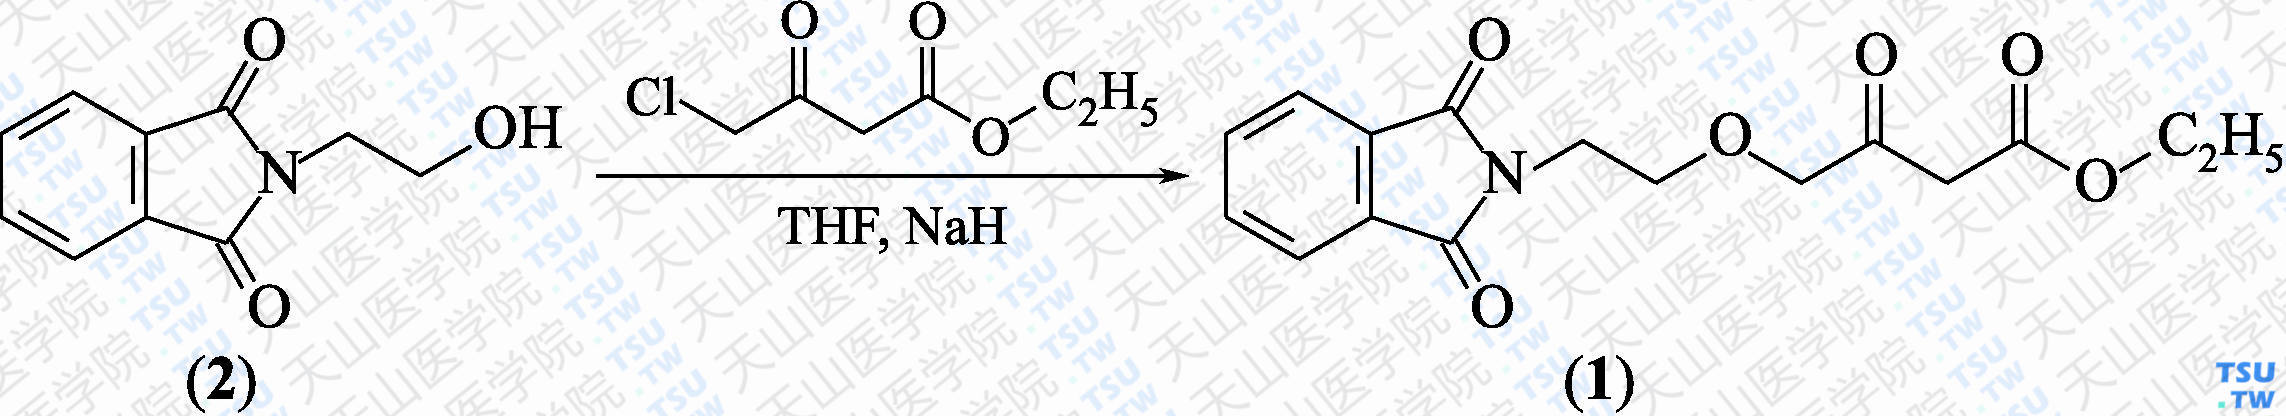 4-[（2-邻苯二甲酰亚胺）乙氧基]乙酰乙酸乙酯（分子式：C<sub>16</sub>H<sub>17</sub>NO<sub>6</sub>）的合成方法路线及其结构式